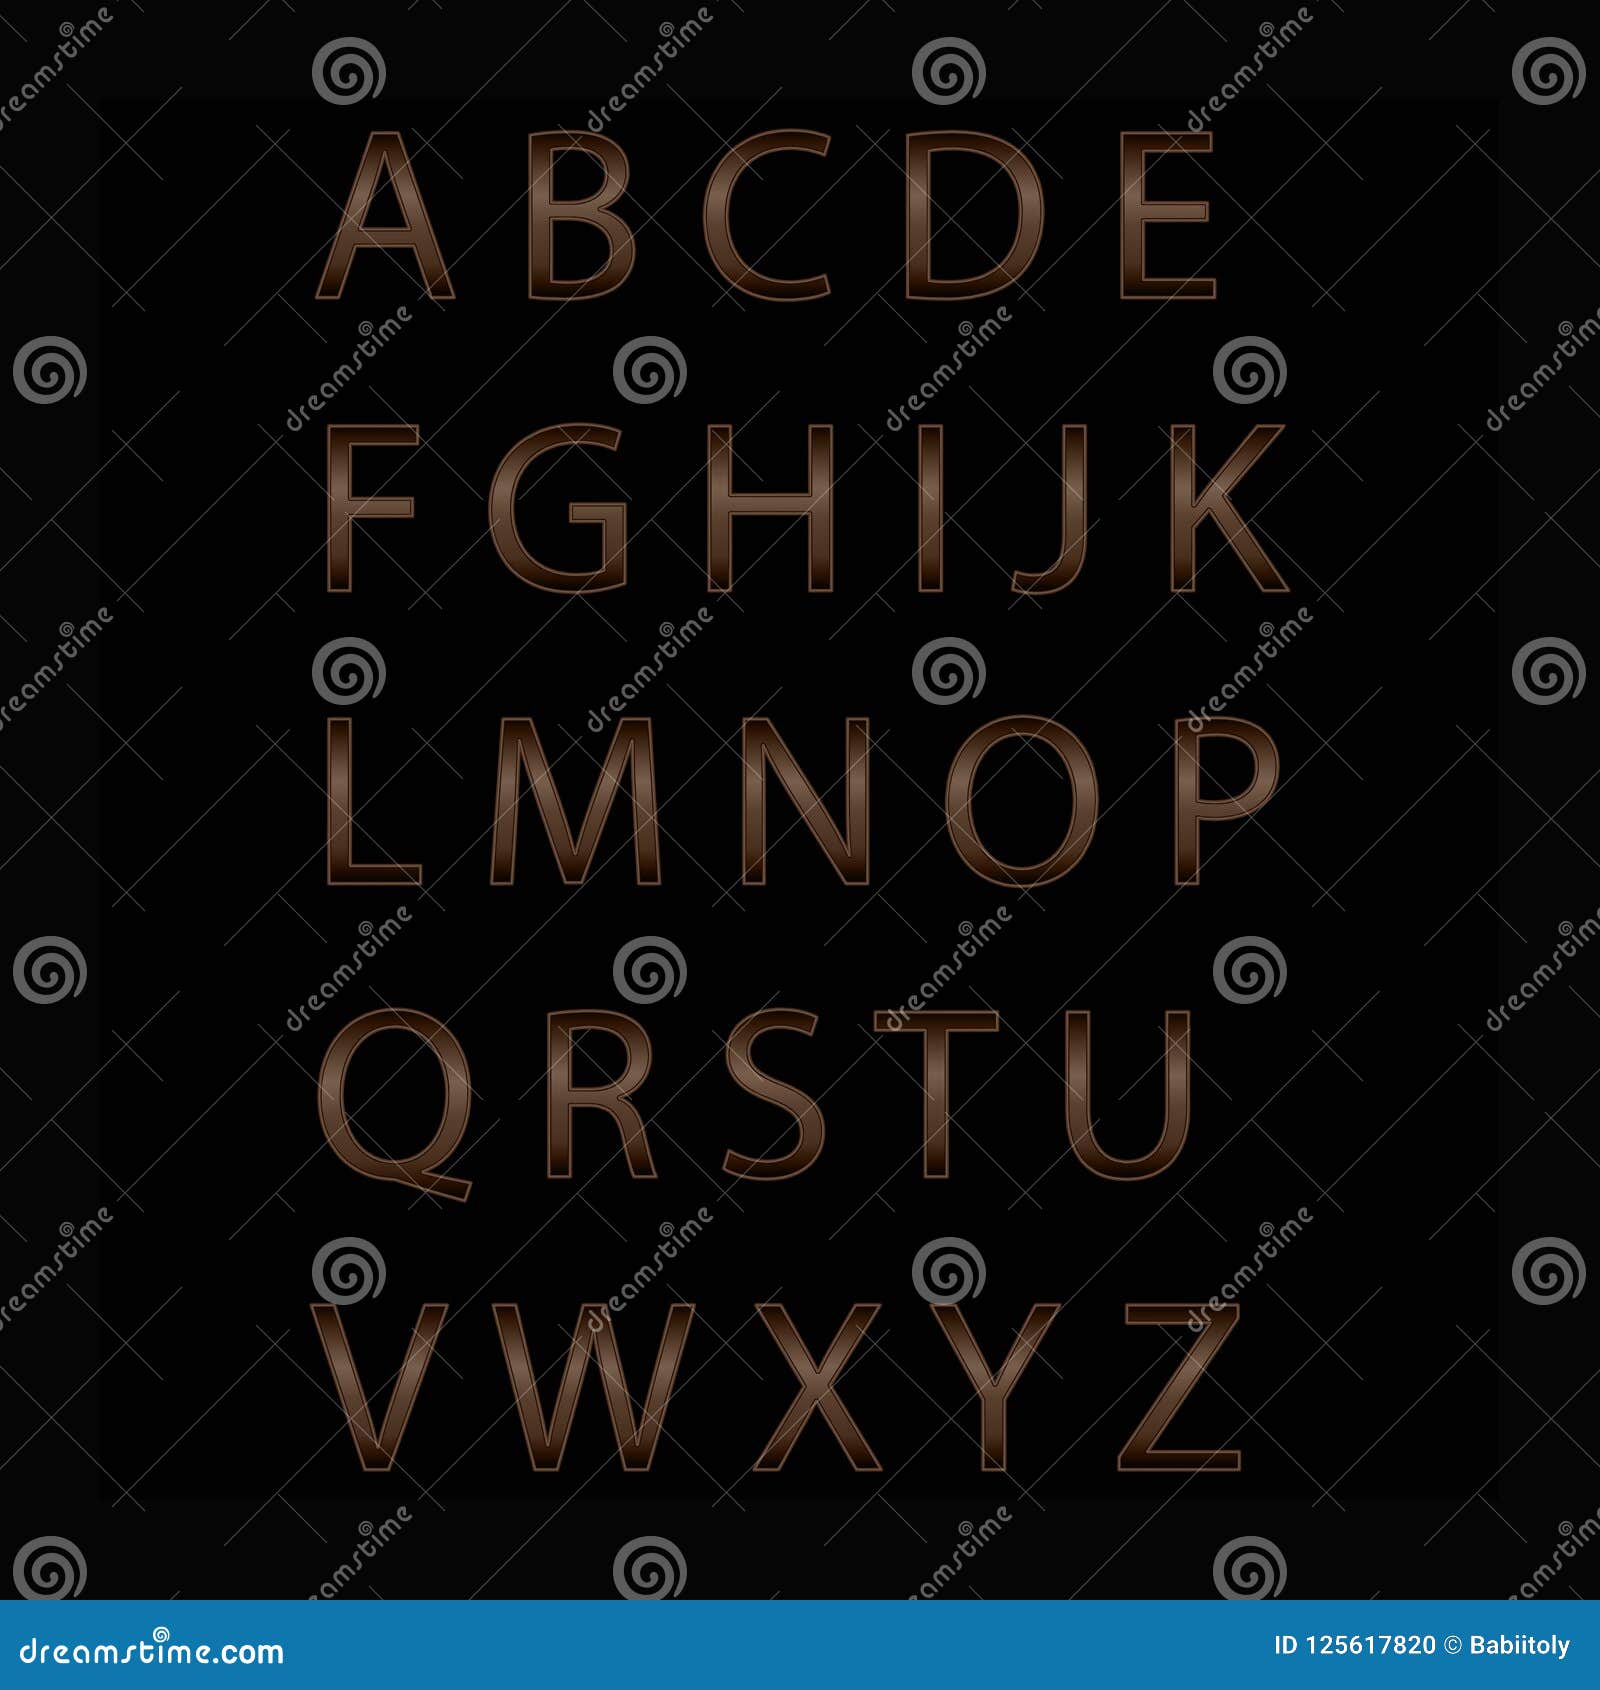 Alphabet Letters. Neon Letters, Alphabet Logo. Font Style - Vector ...